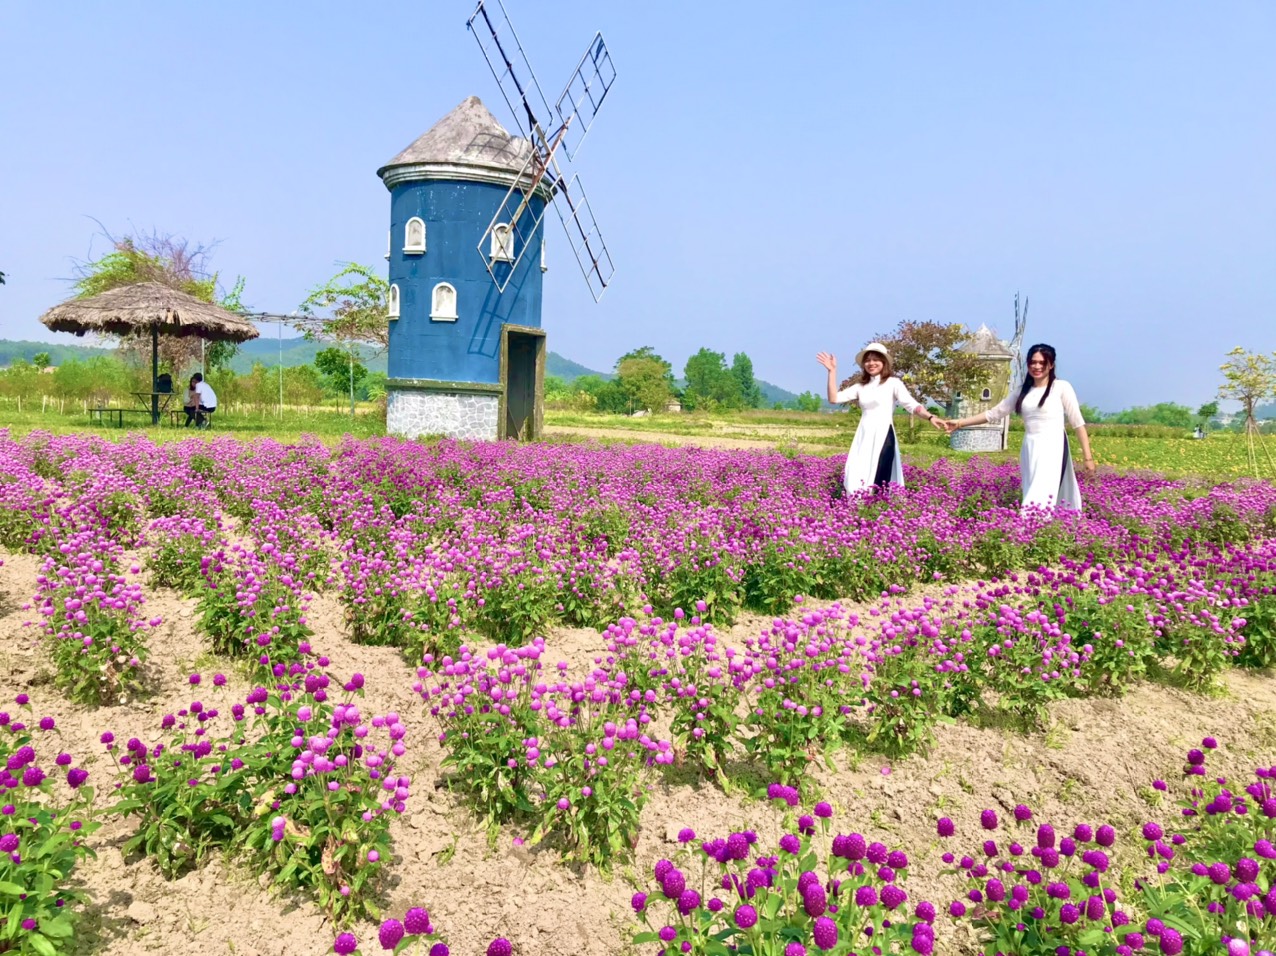 Đa Mai, hoa sắc: Sự đa dạng về chủng loại hoa đang là điểm nhấn của Đa Mai - một trong những vườn hoa nổi tiếng nhất của Việt Nam. Theo dõi hình ảnh về những bông hoa tươi sáng, sống động và đẹp mắt nhất và cảm nhận được vẻ đẹp tự nhiên của thiên nhiên.